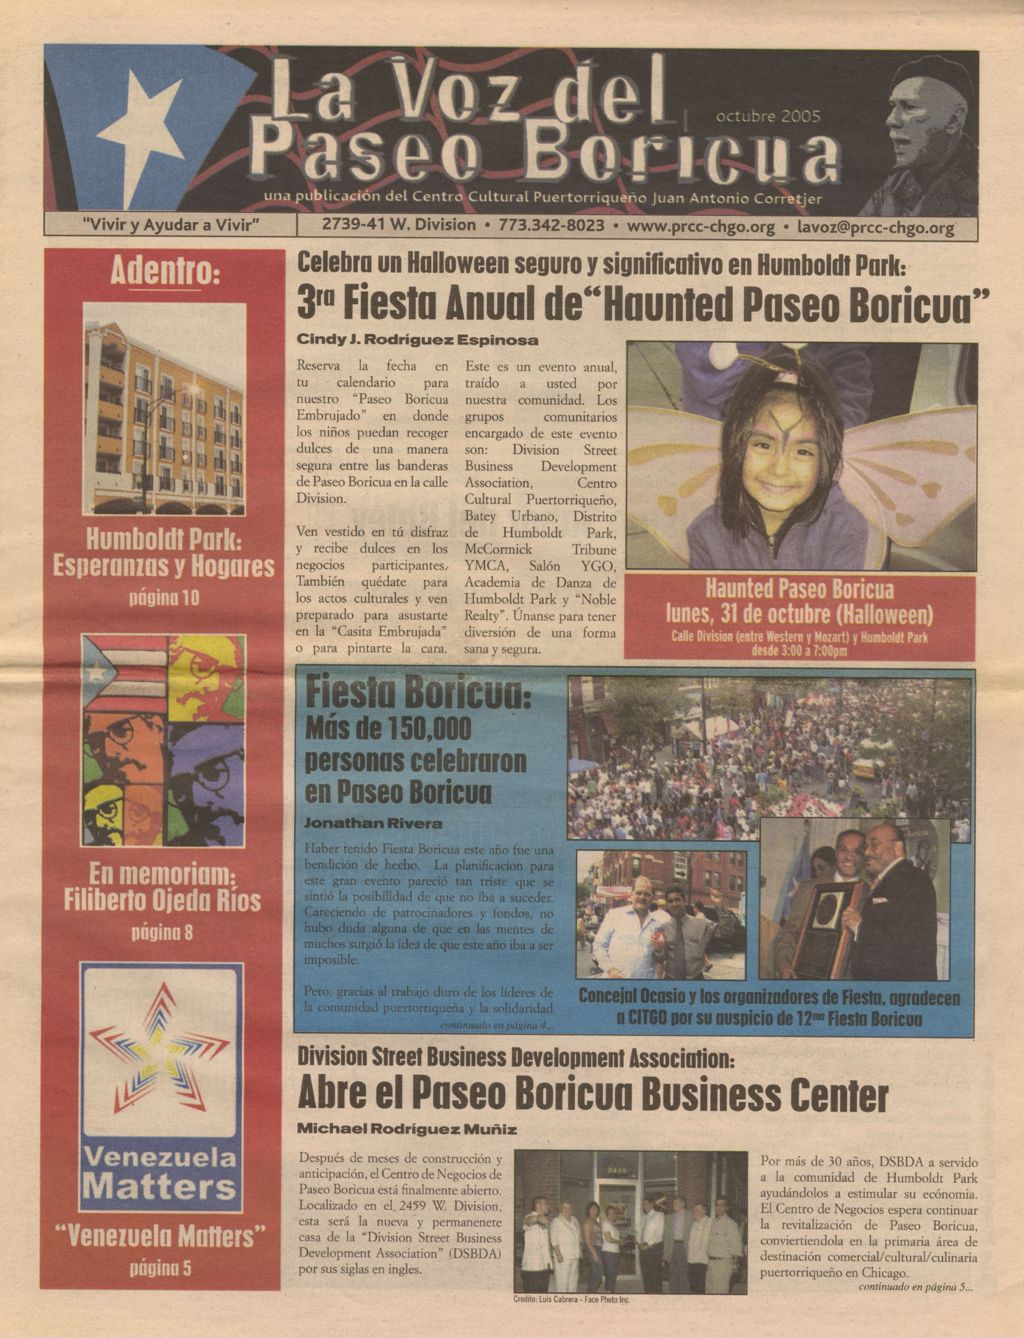 Miniature of La Voz del Paseo Boricua; October 2005 (Spanish and English covers)